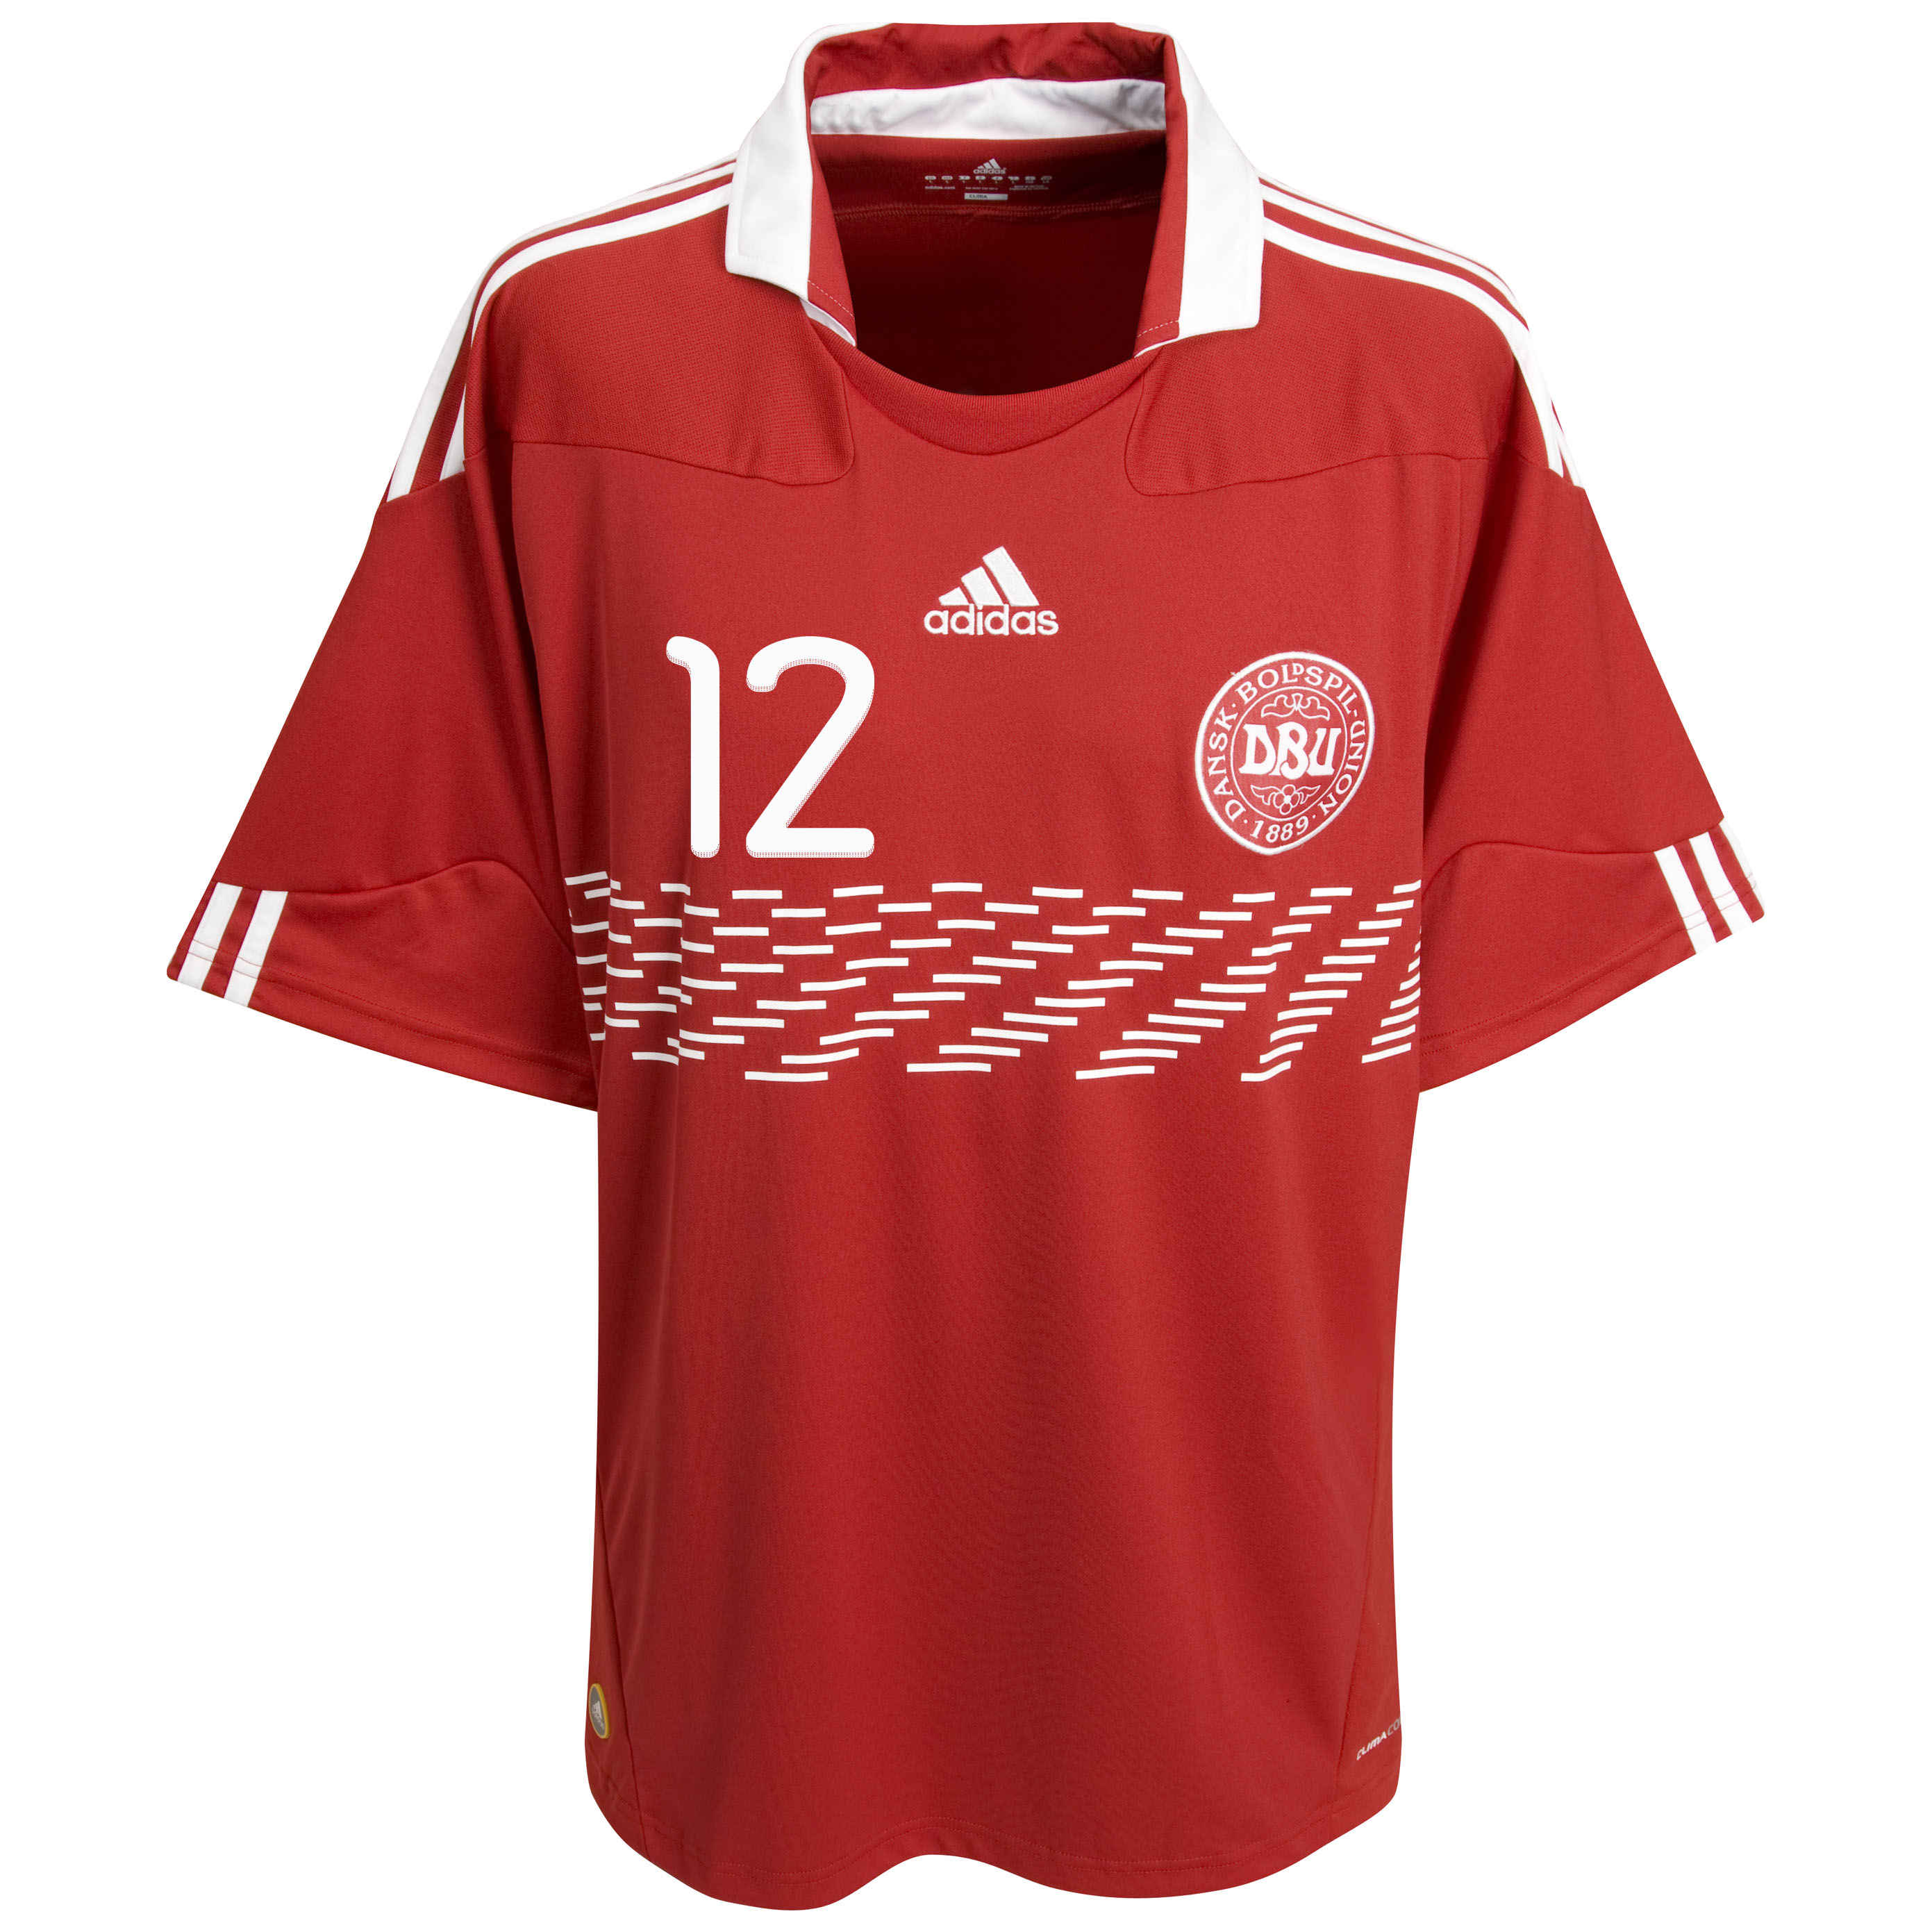 ملابس المنتخبات لكأس العالم ‎(2010)‎ Kb-73524a